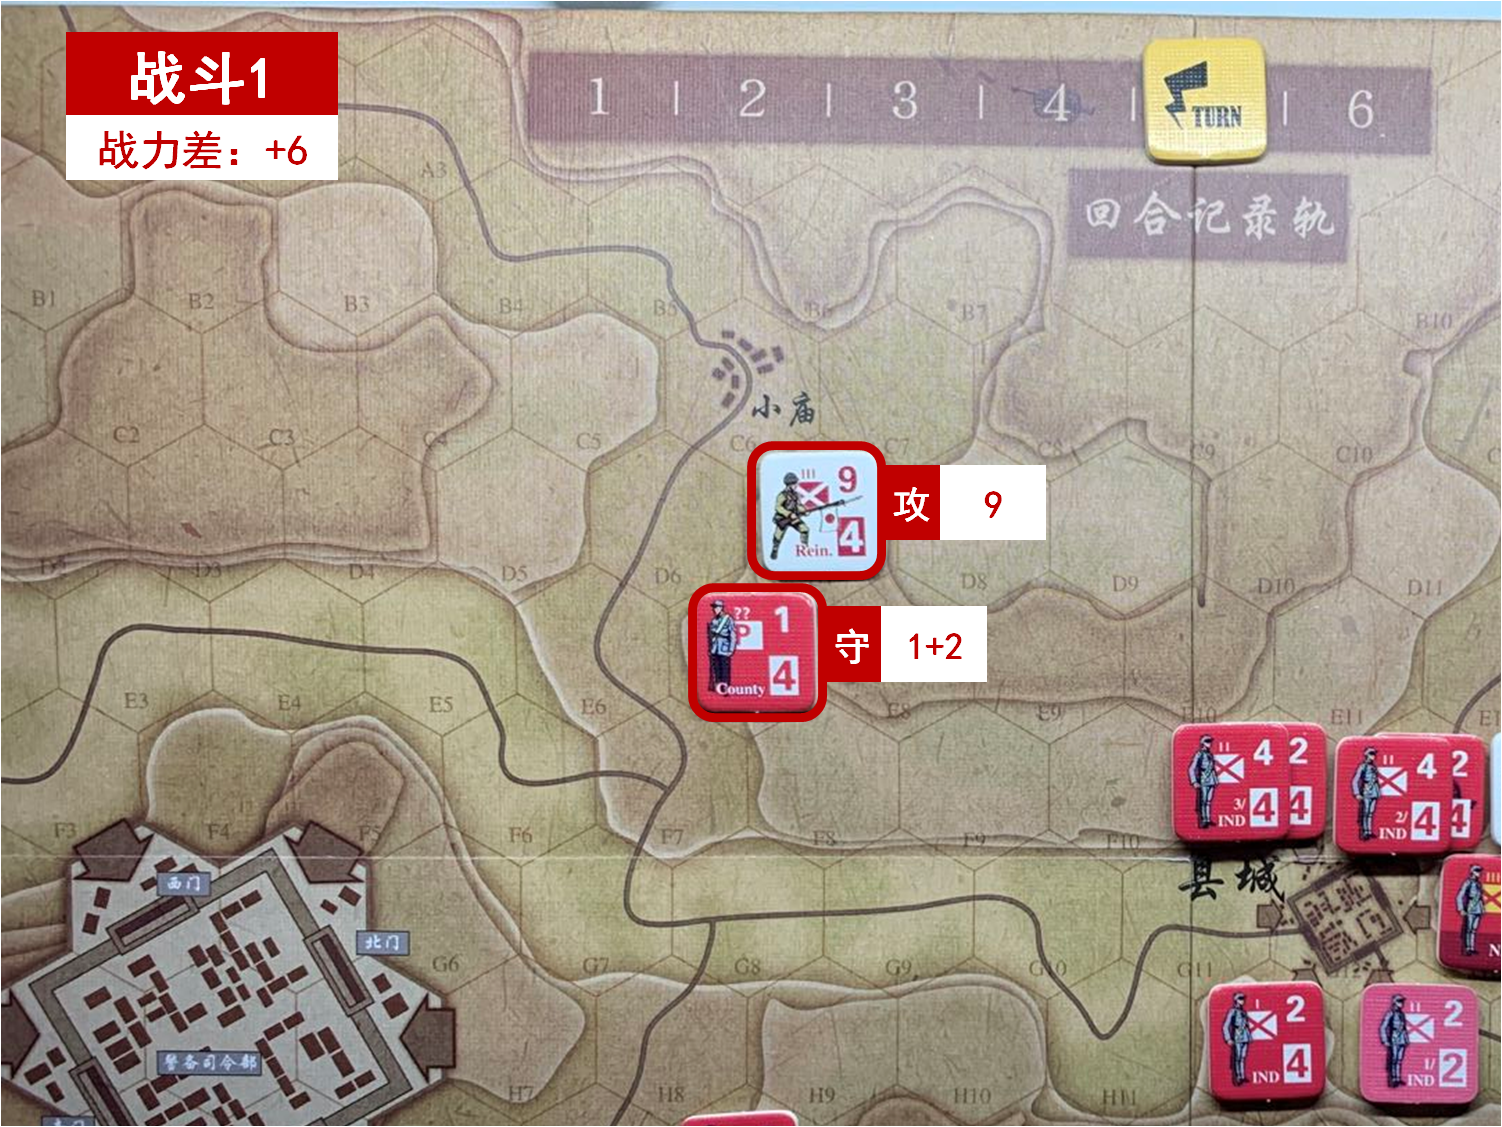 第五回合 日方战斗阶段 战斗1 战斗力差值